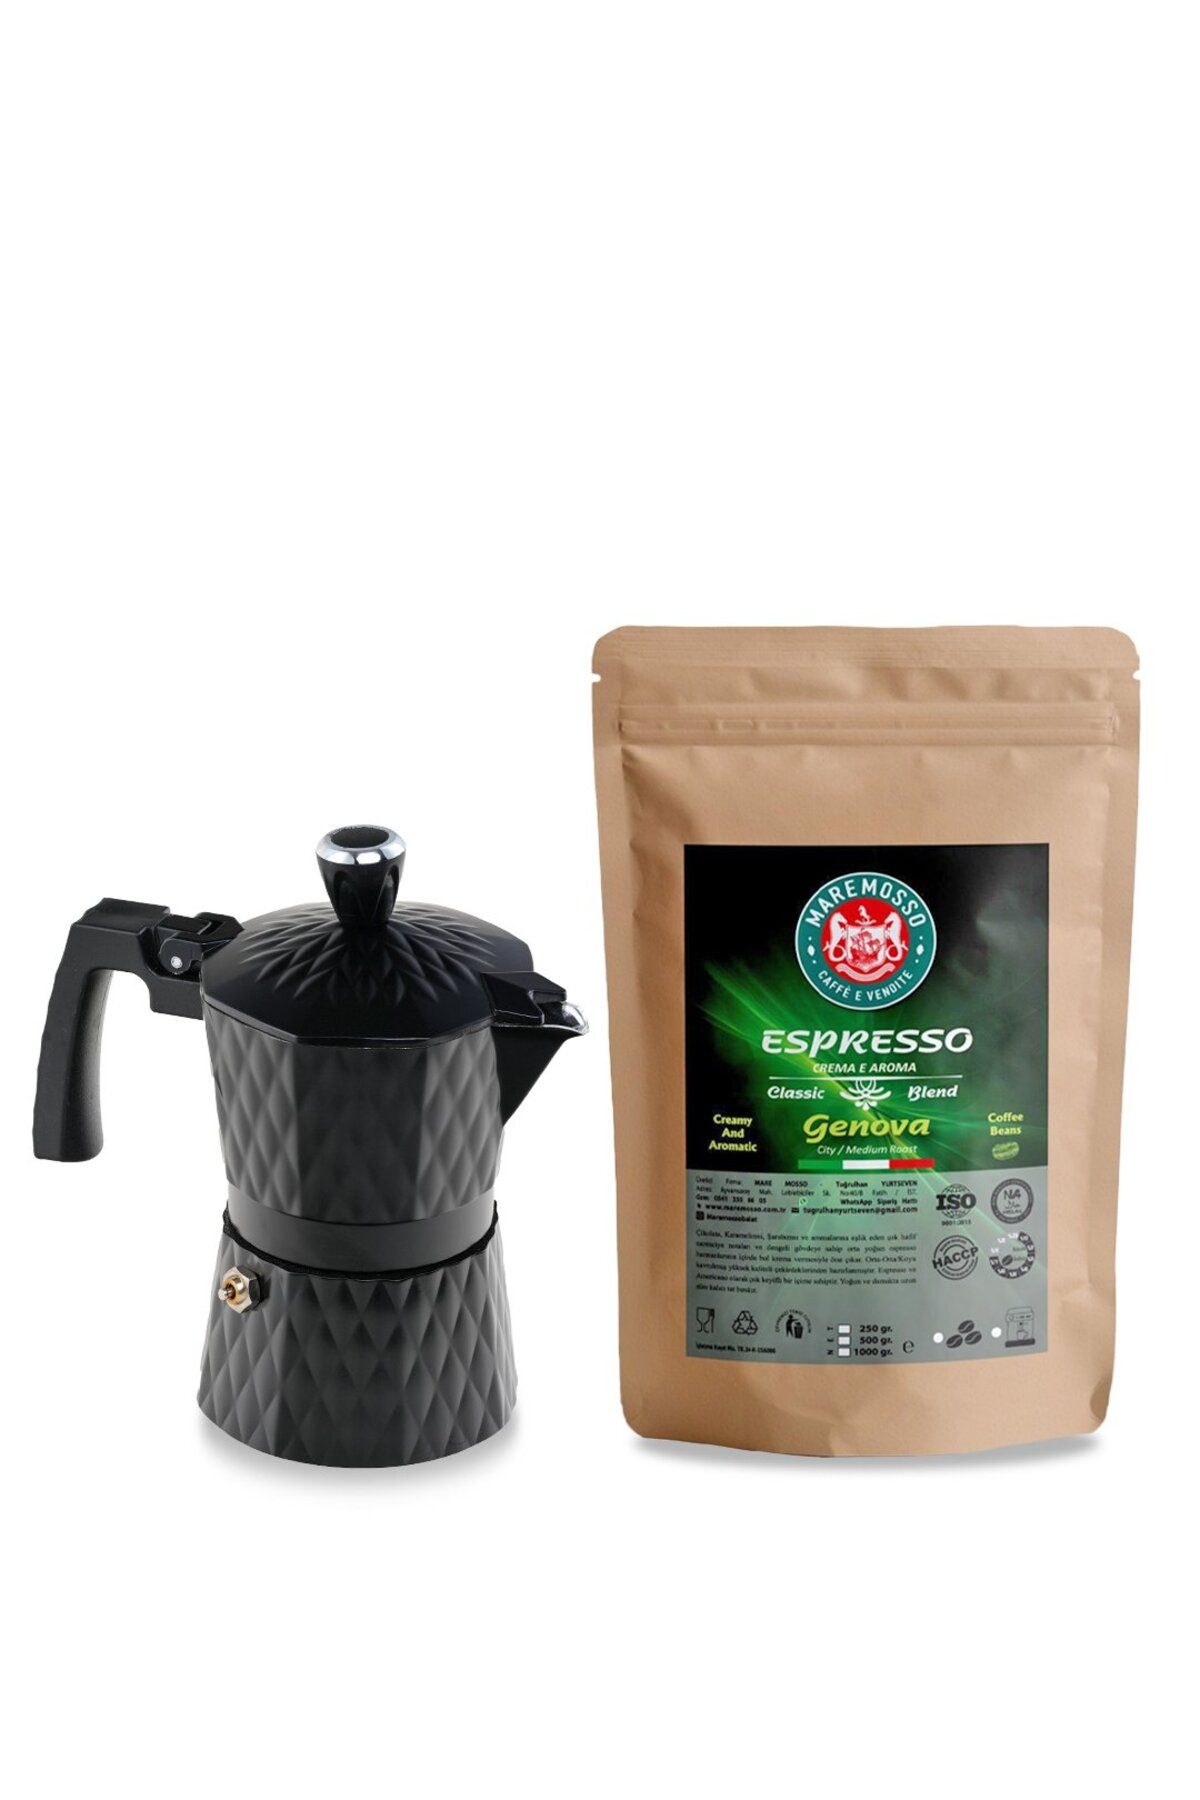 Mare Mosso Caffe ê Vendite Genova Espresso Kahve 250 Gr. & Moka Pot 3 Cup. (Siyah) 1. Set